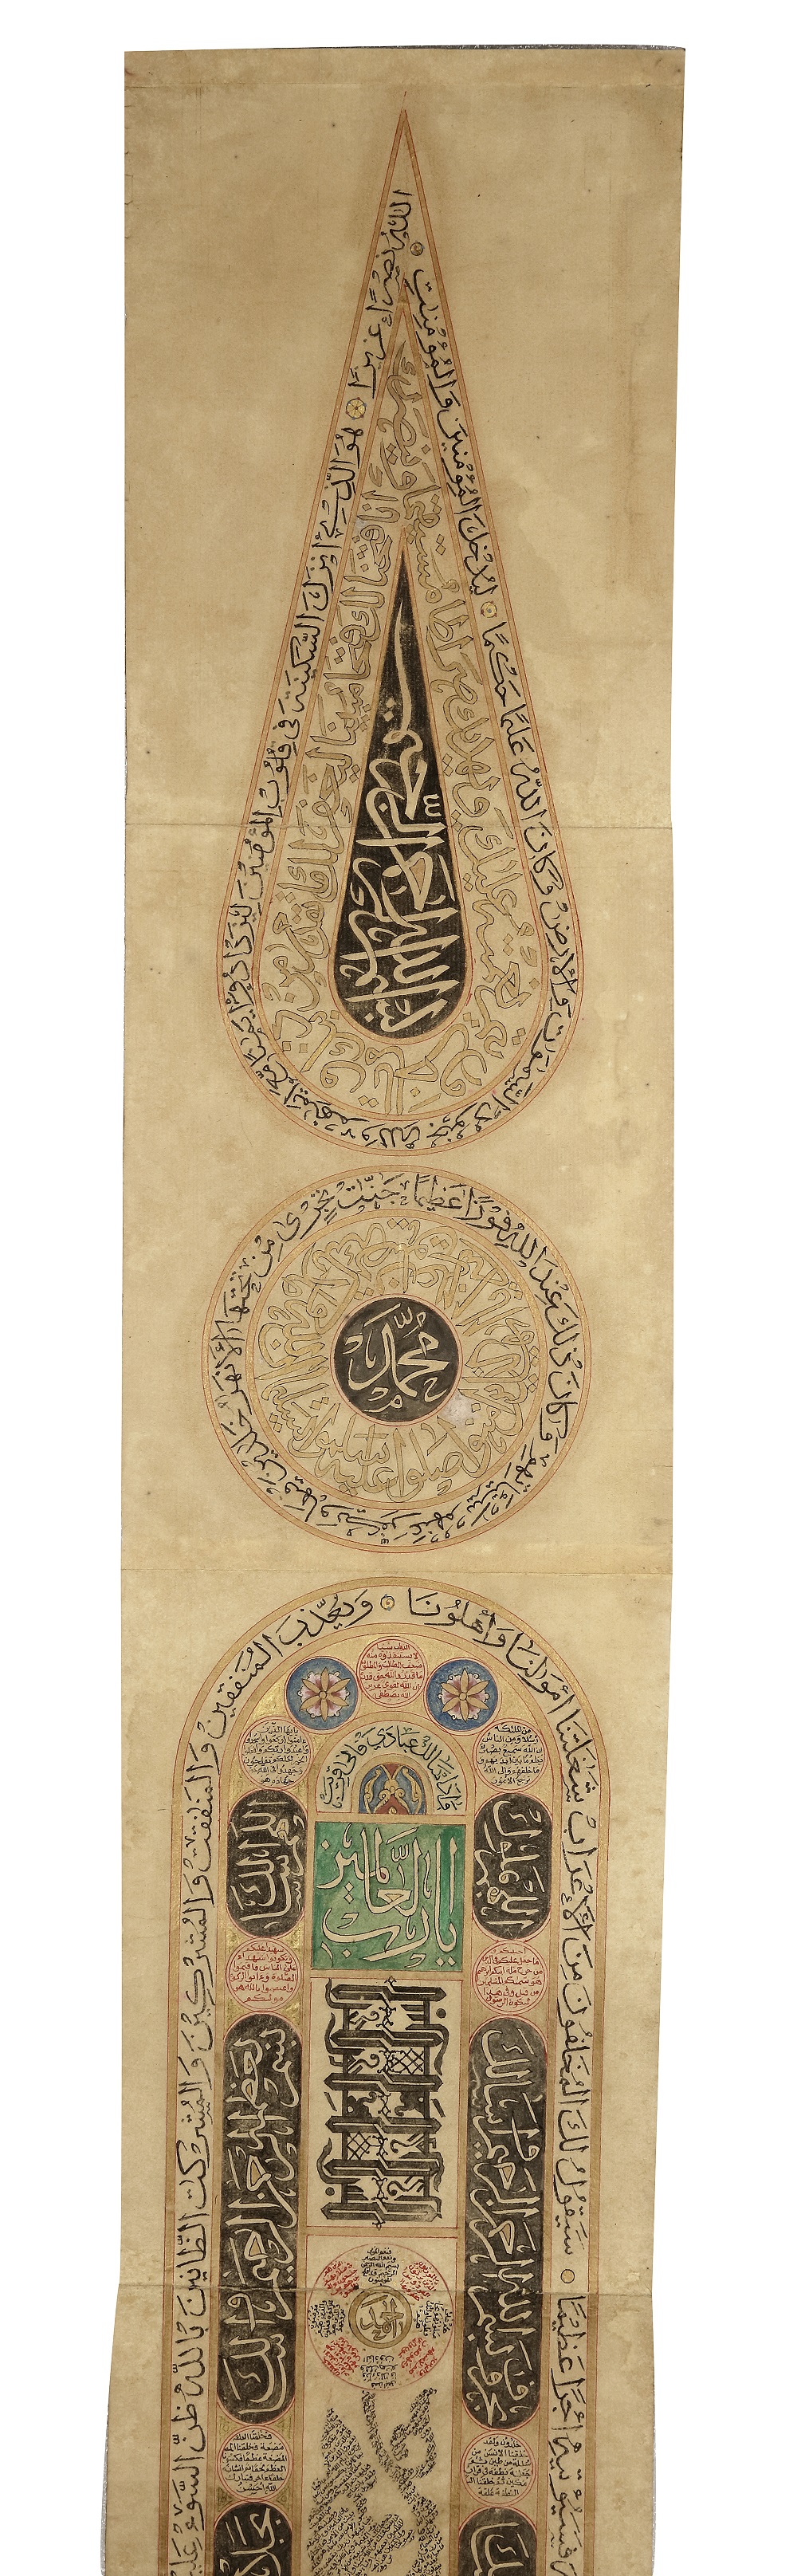 AN OTTOMAN ILLUMINATED PRAYER SCROLL, OTTOMAN TURKEY, 18TH CENTURY - Image 2 of 6